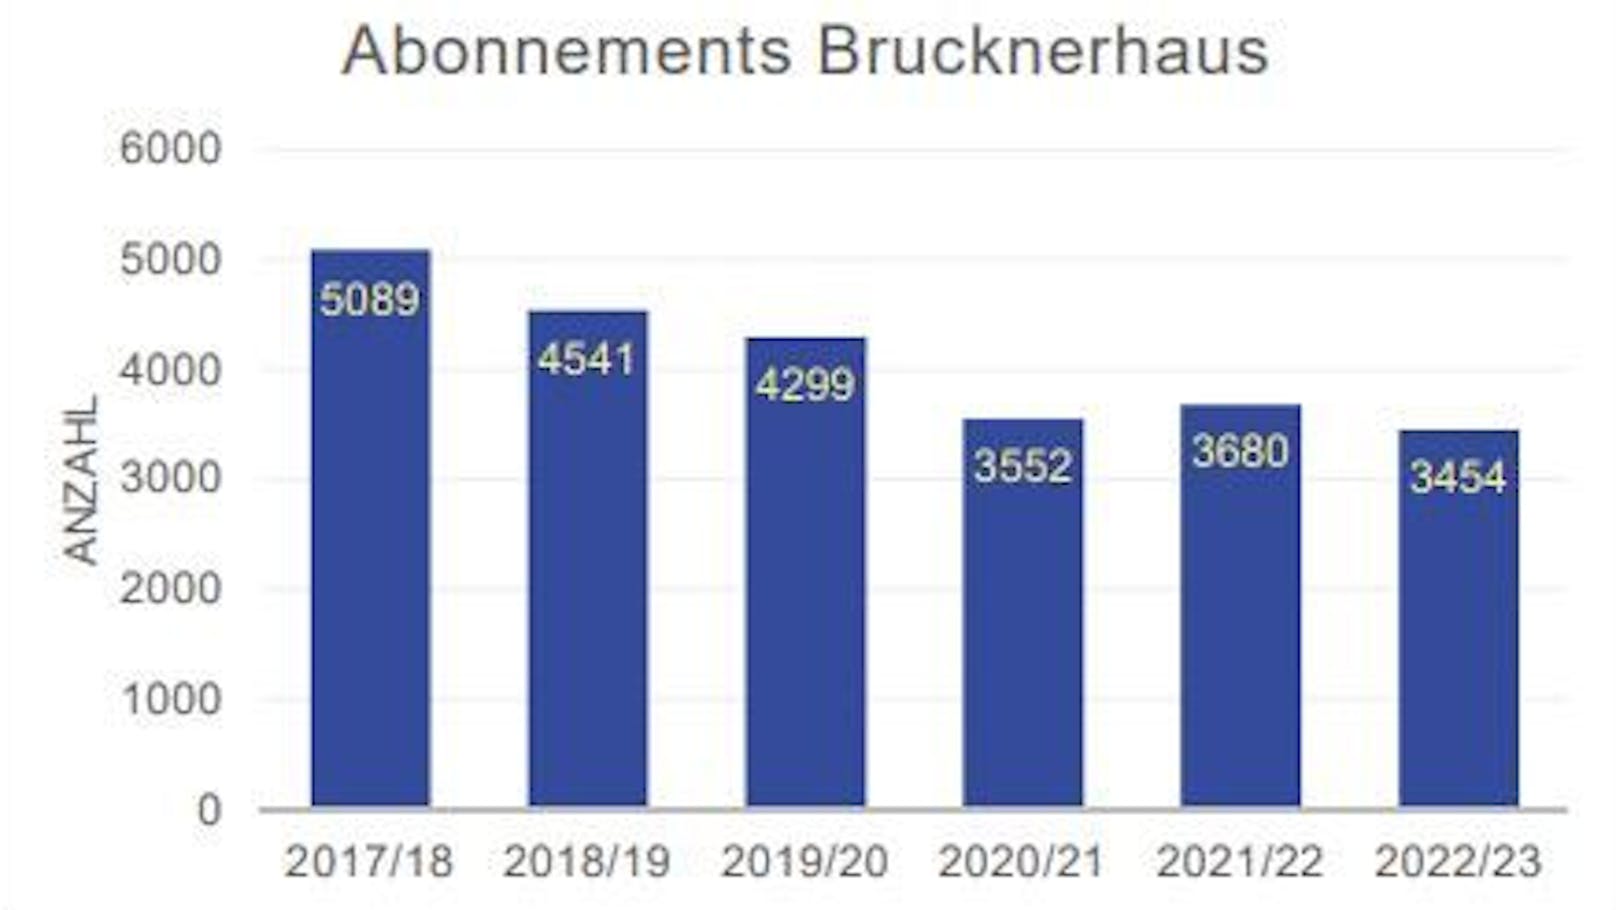 Die Zahl der Brucknerhaus-Abos ist seit 2017 deutlich gesunken.